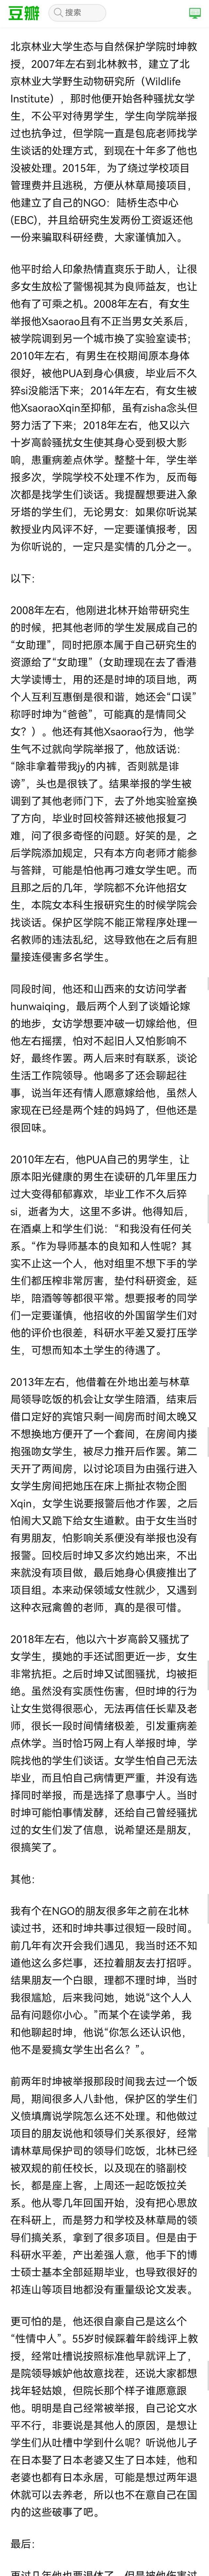 被指骚扰女学生,北京林大教授回应 超长贴文原文细节曝光